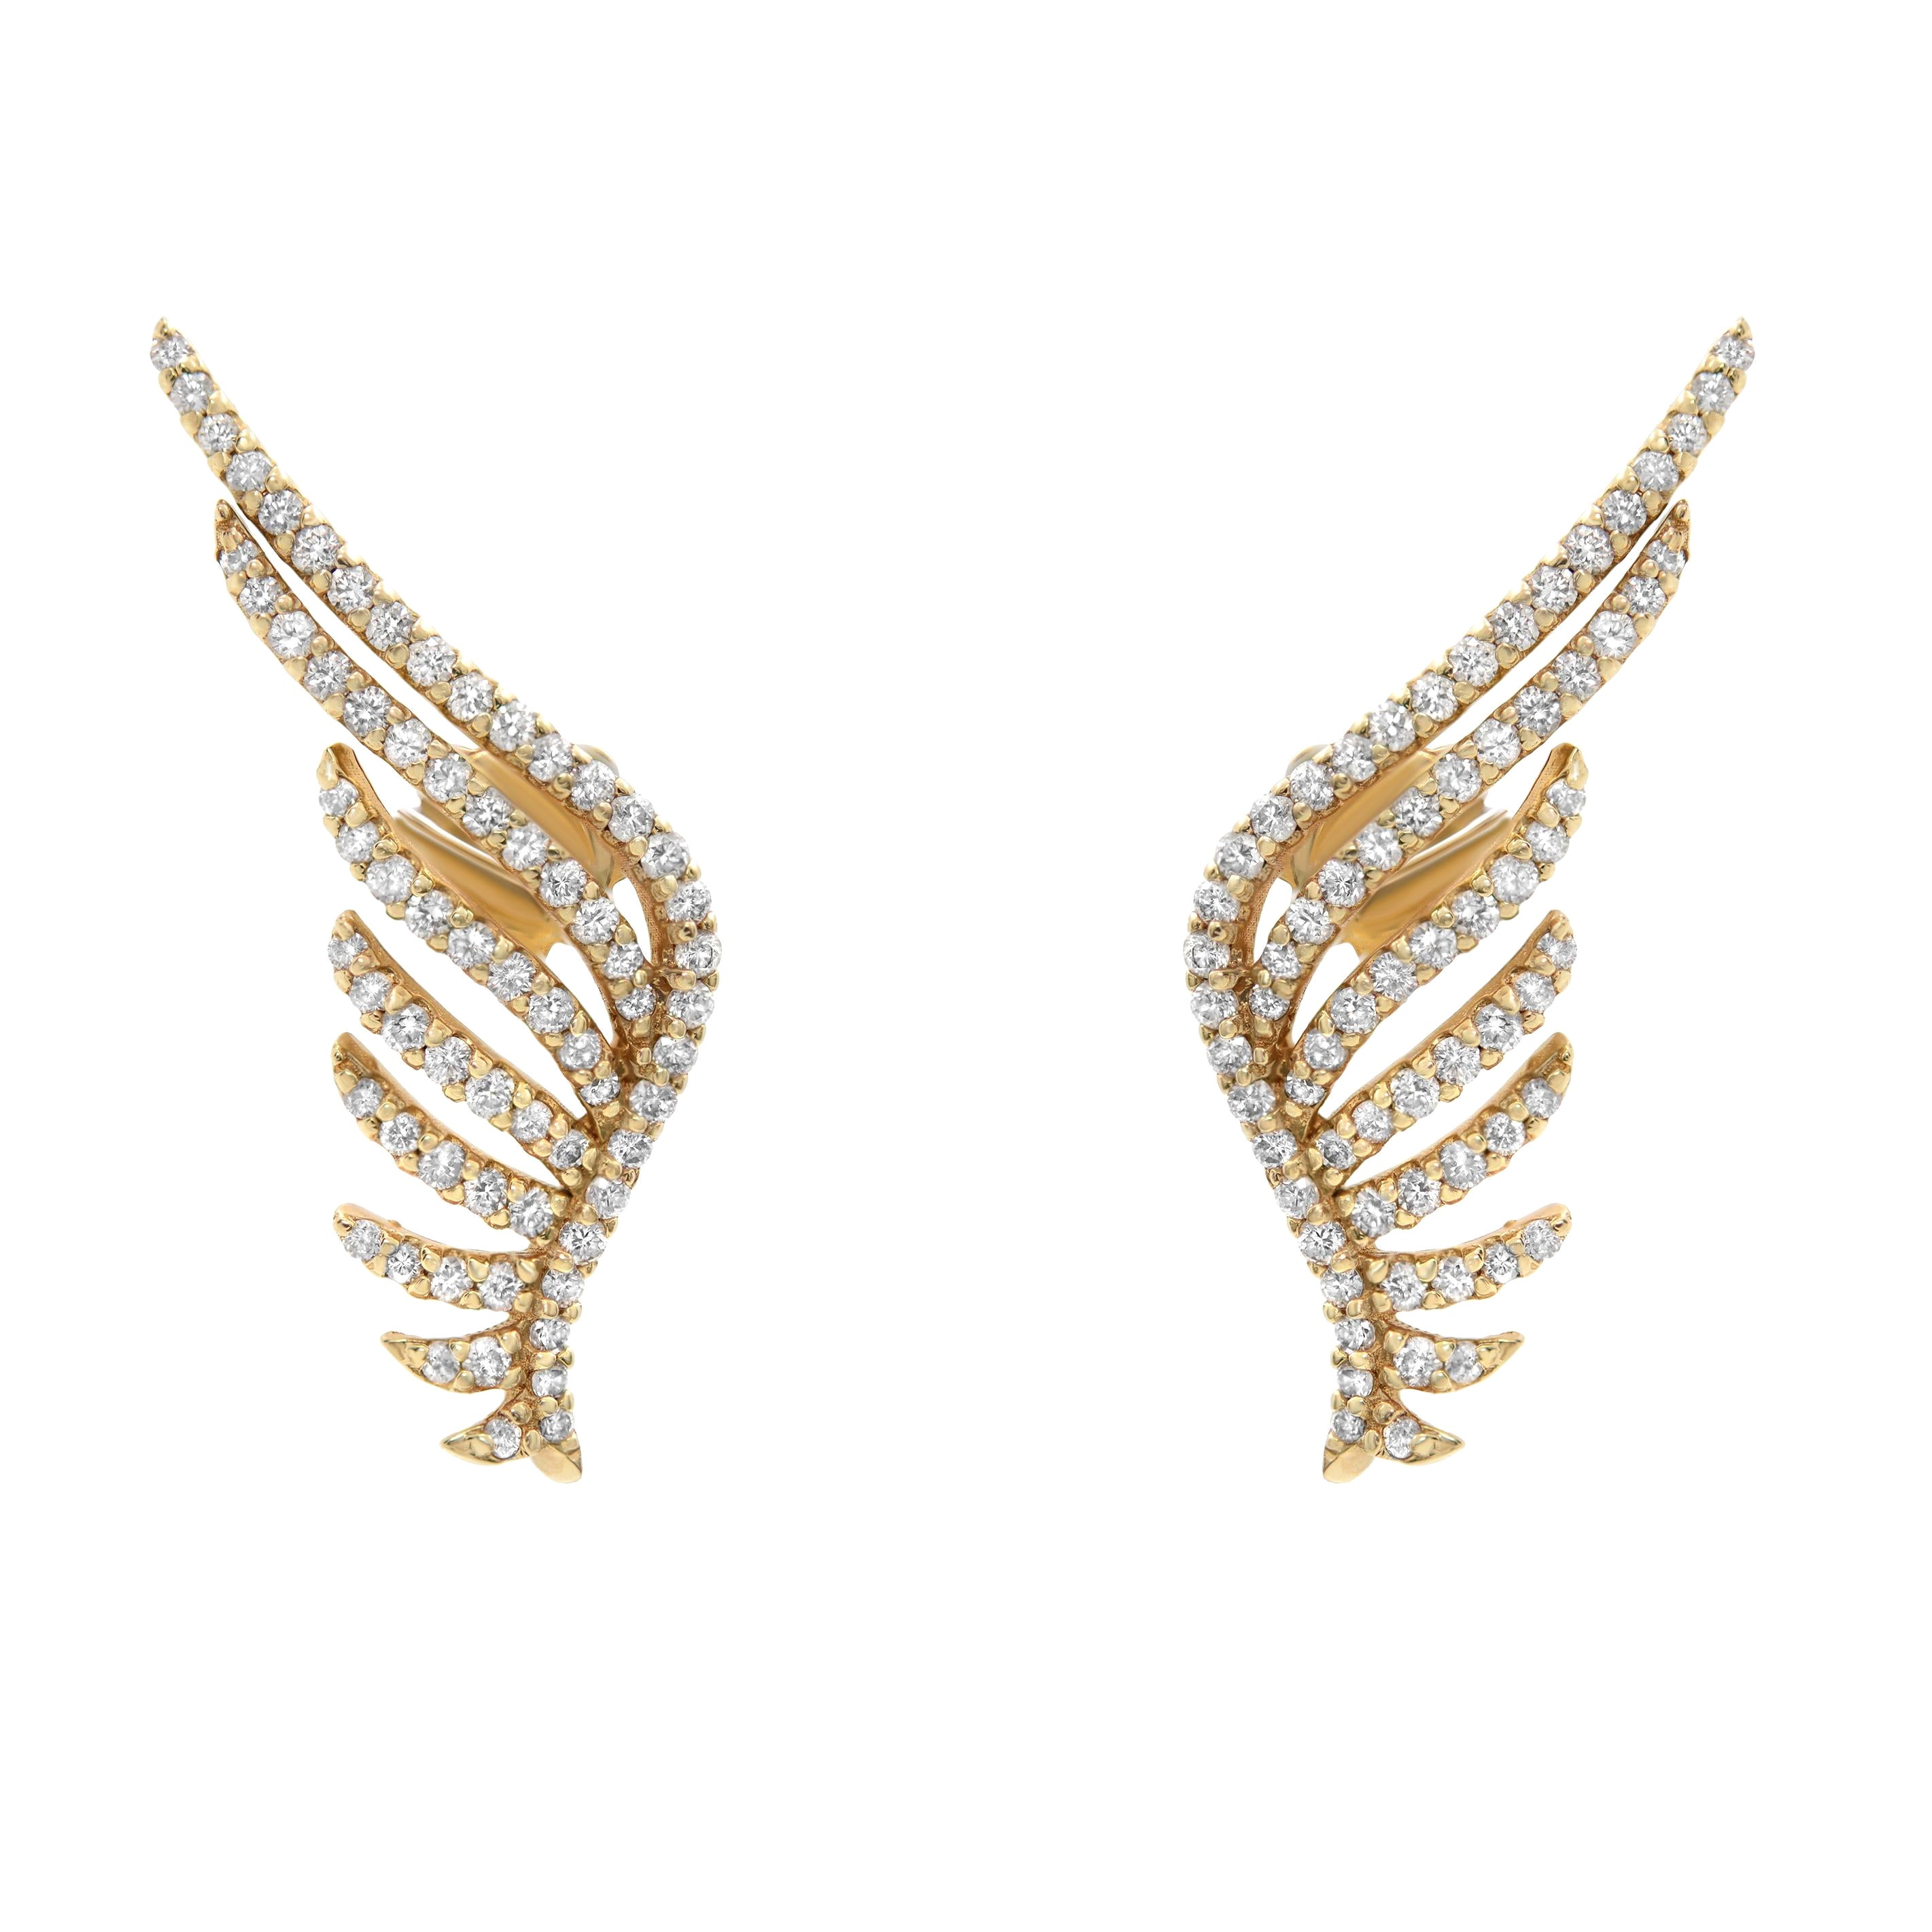 Rachel Koen 14K Yellow Gold Diamond Angel Wing Earrings 1.39cttw For Sale